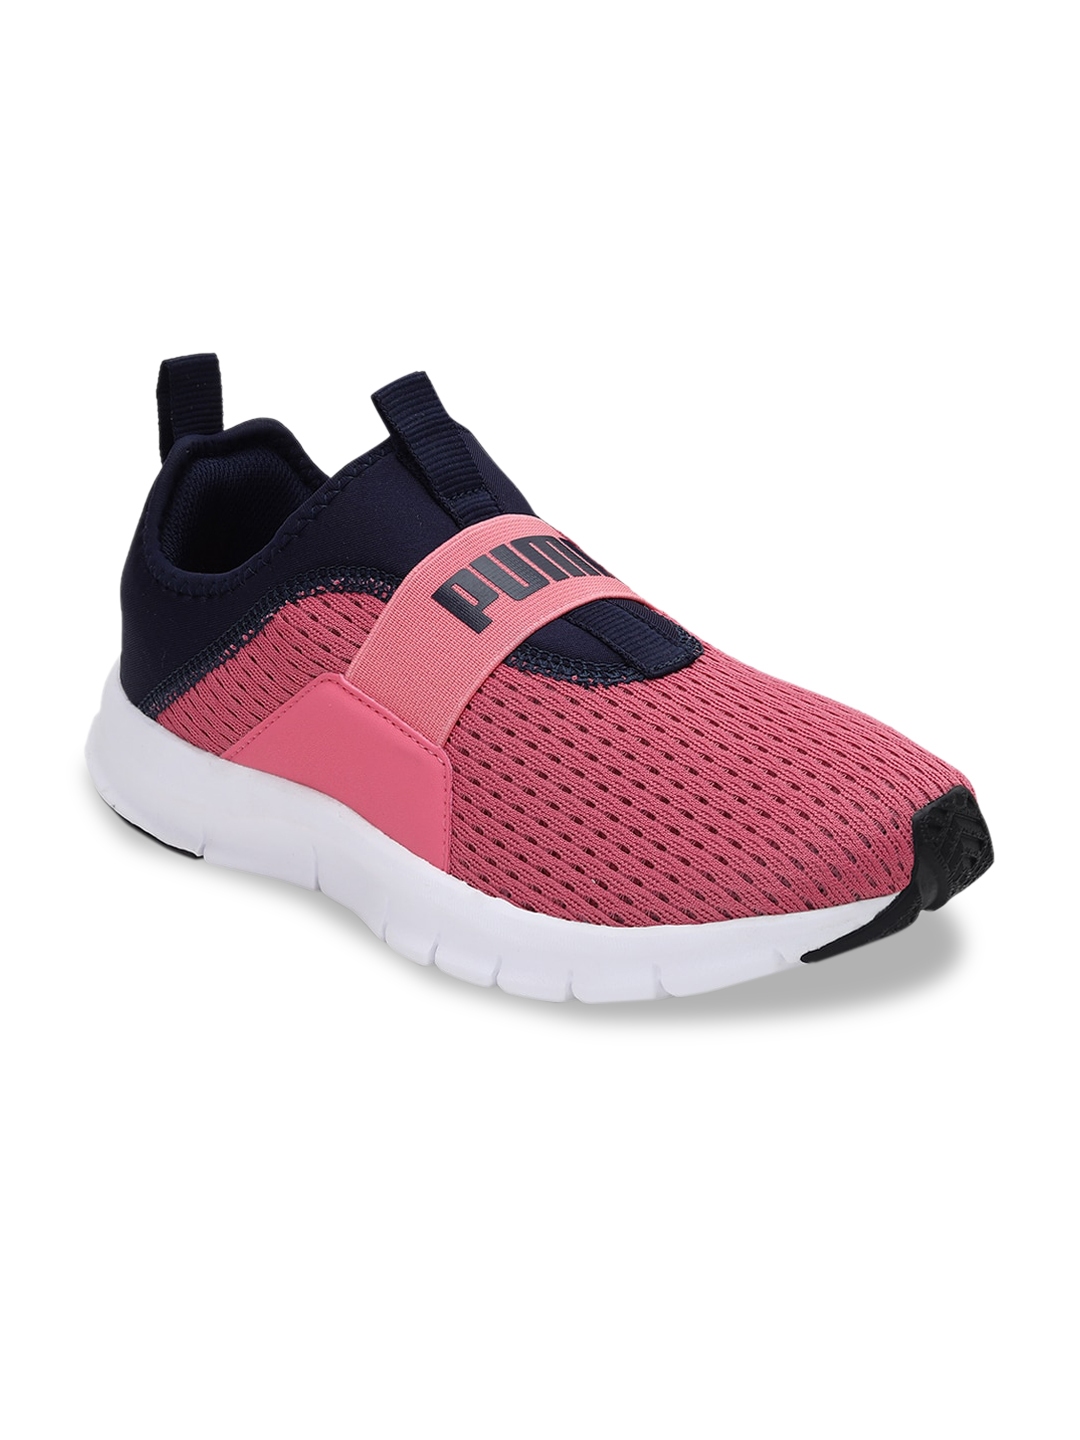 Buy Puma Women Pink & Black Walking Sneakers - Casual Shoes for Women ...